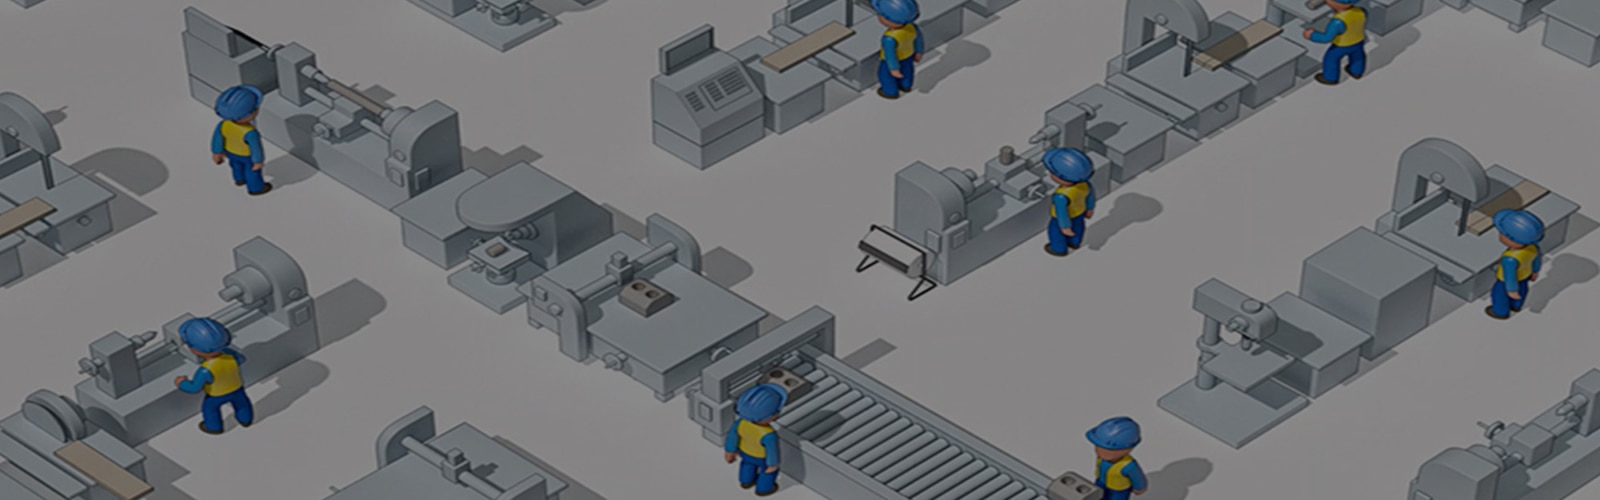 Geïllustreerde afbeelding van werknemers in veiligheidshelmen van bovenaf gezien in een industriële omgeving. 